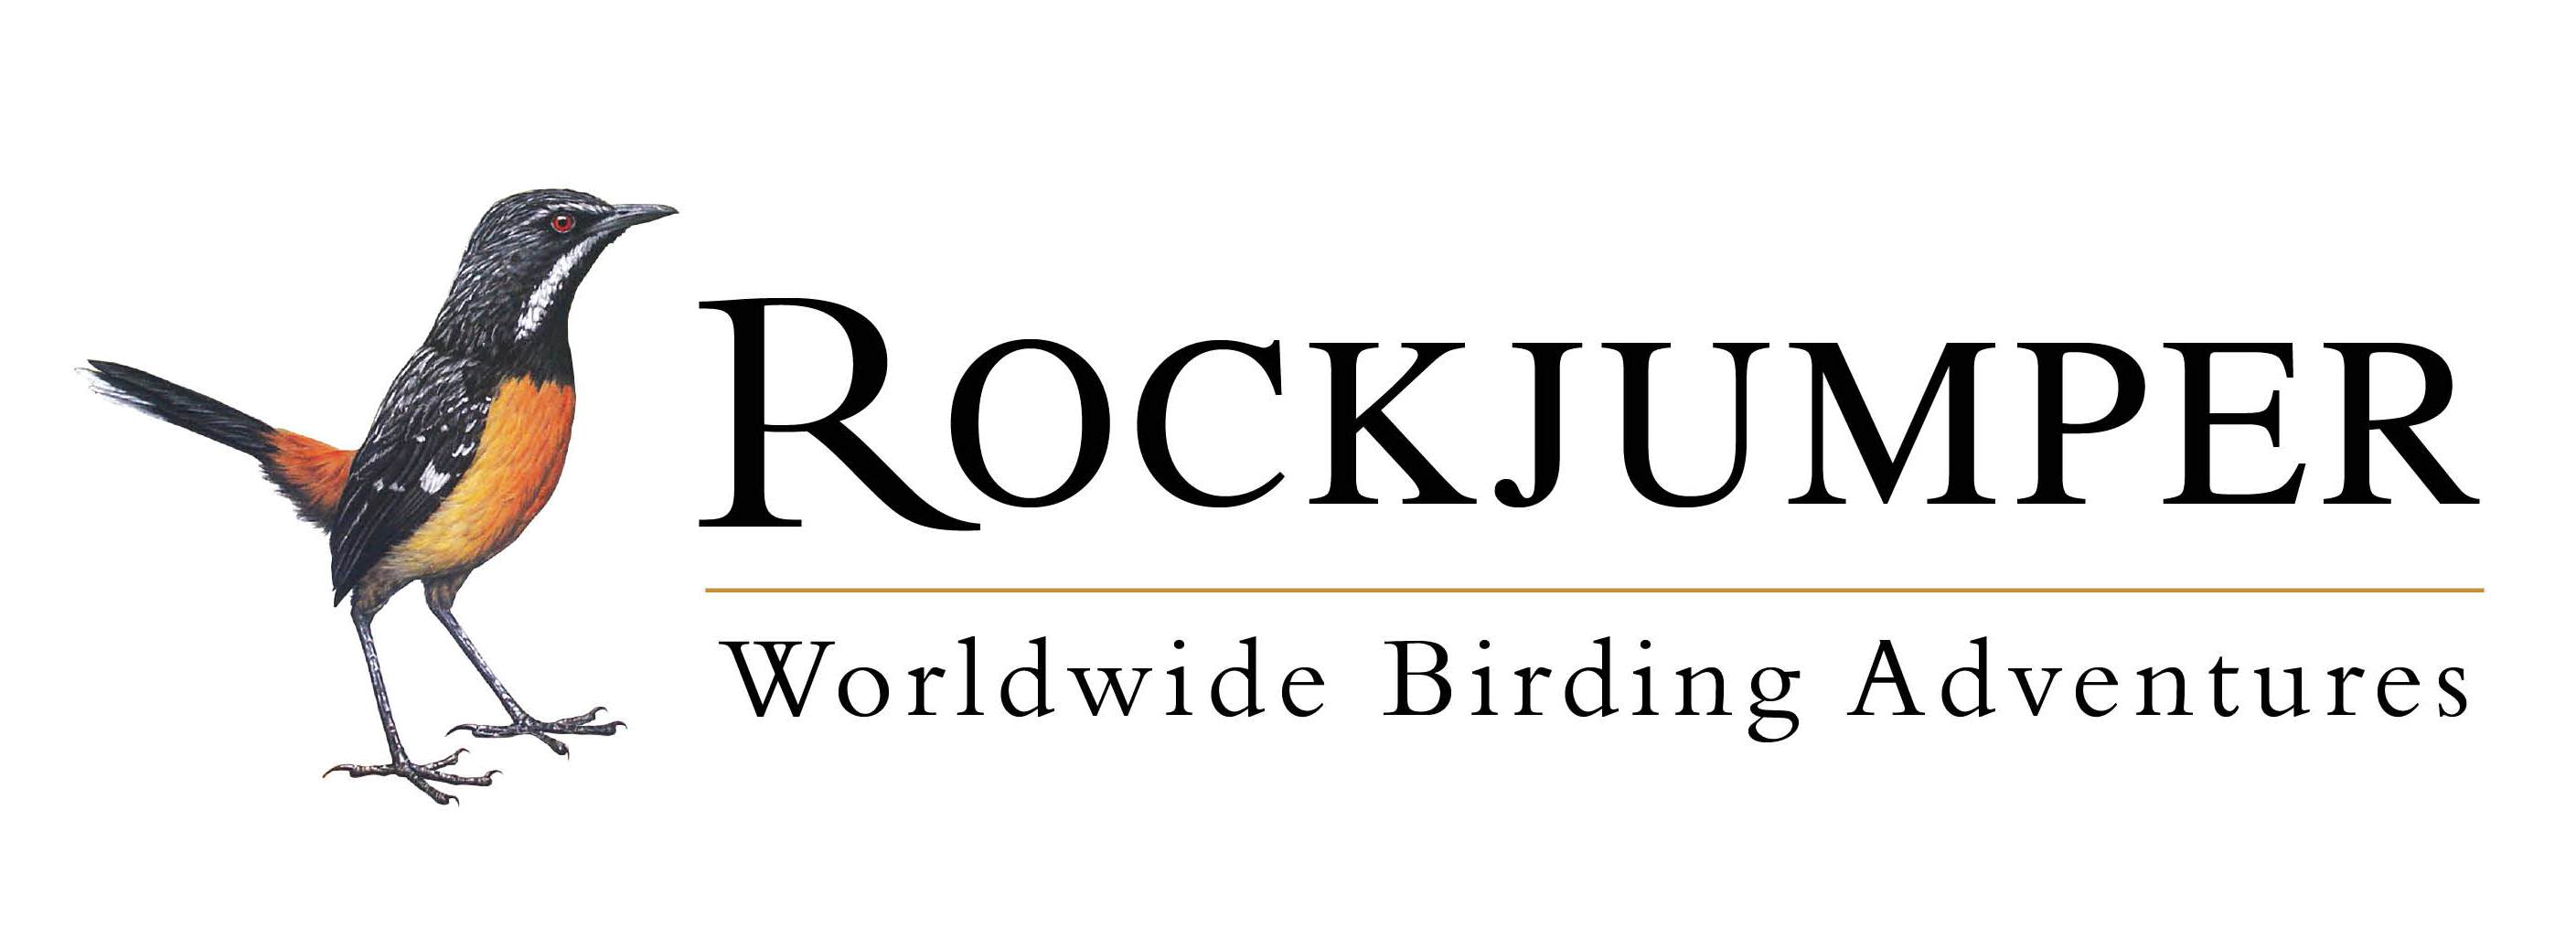 Rockjumper logo